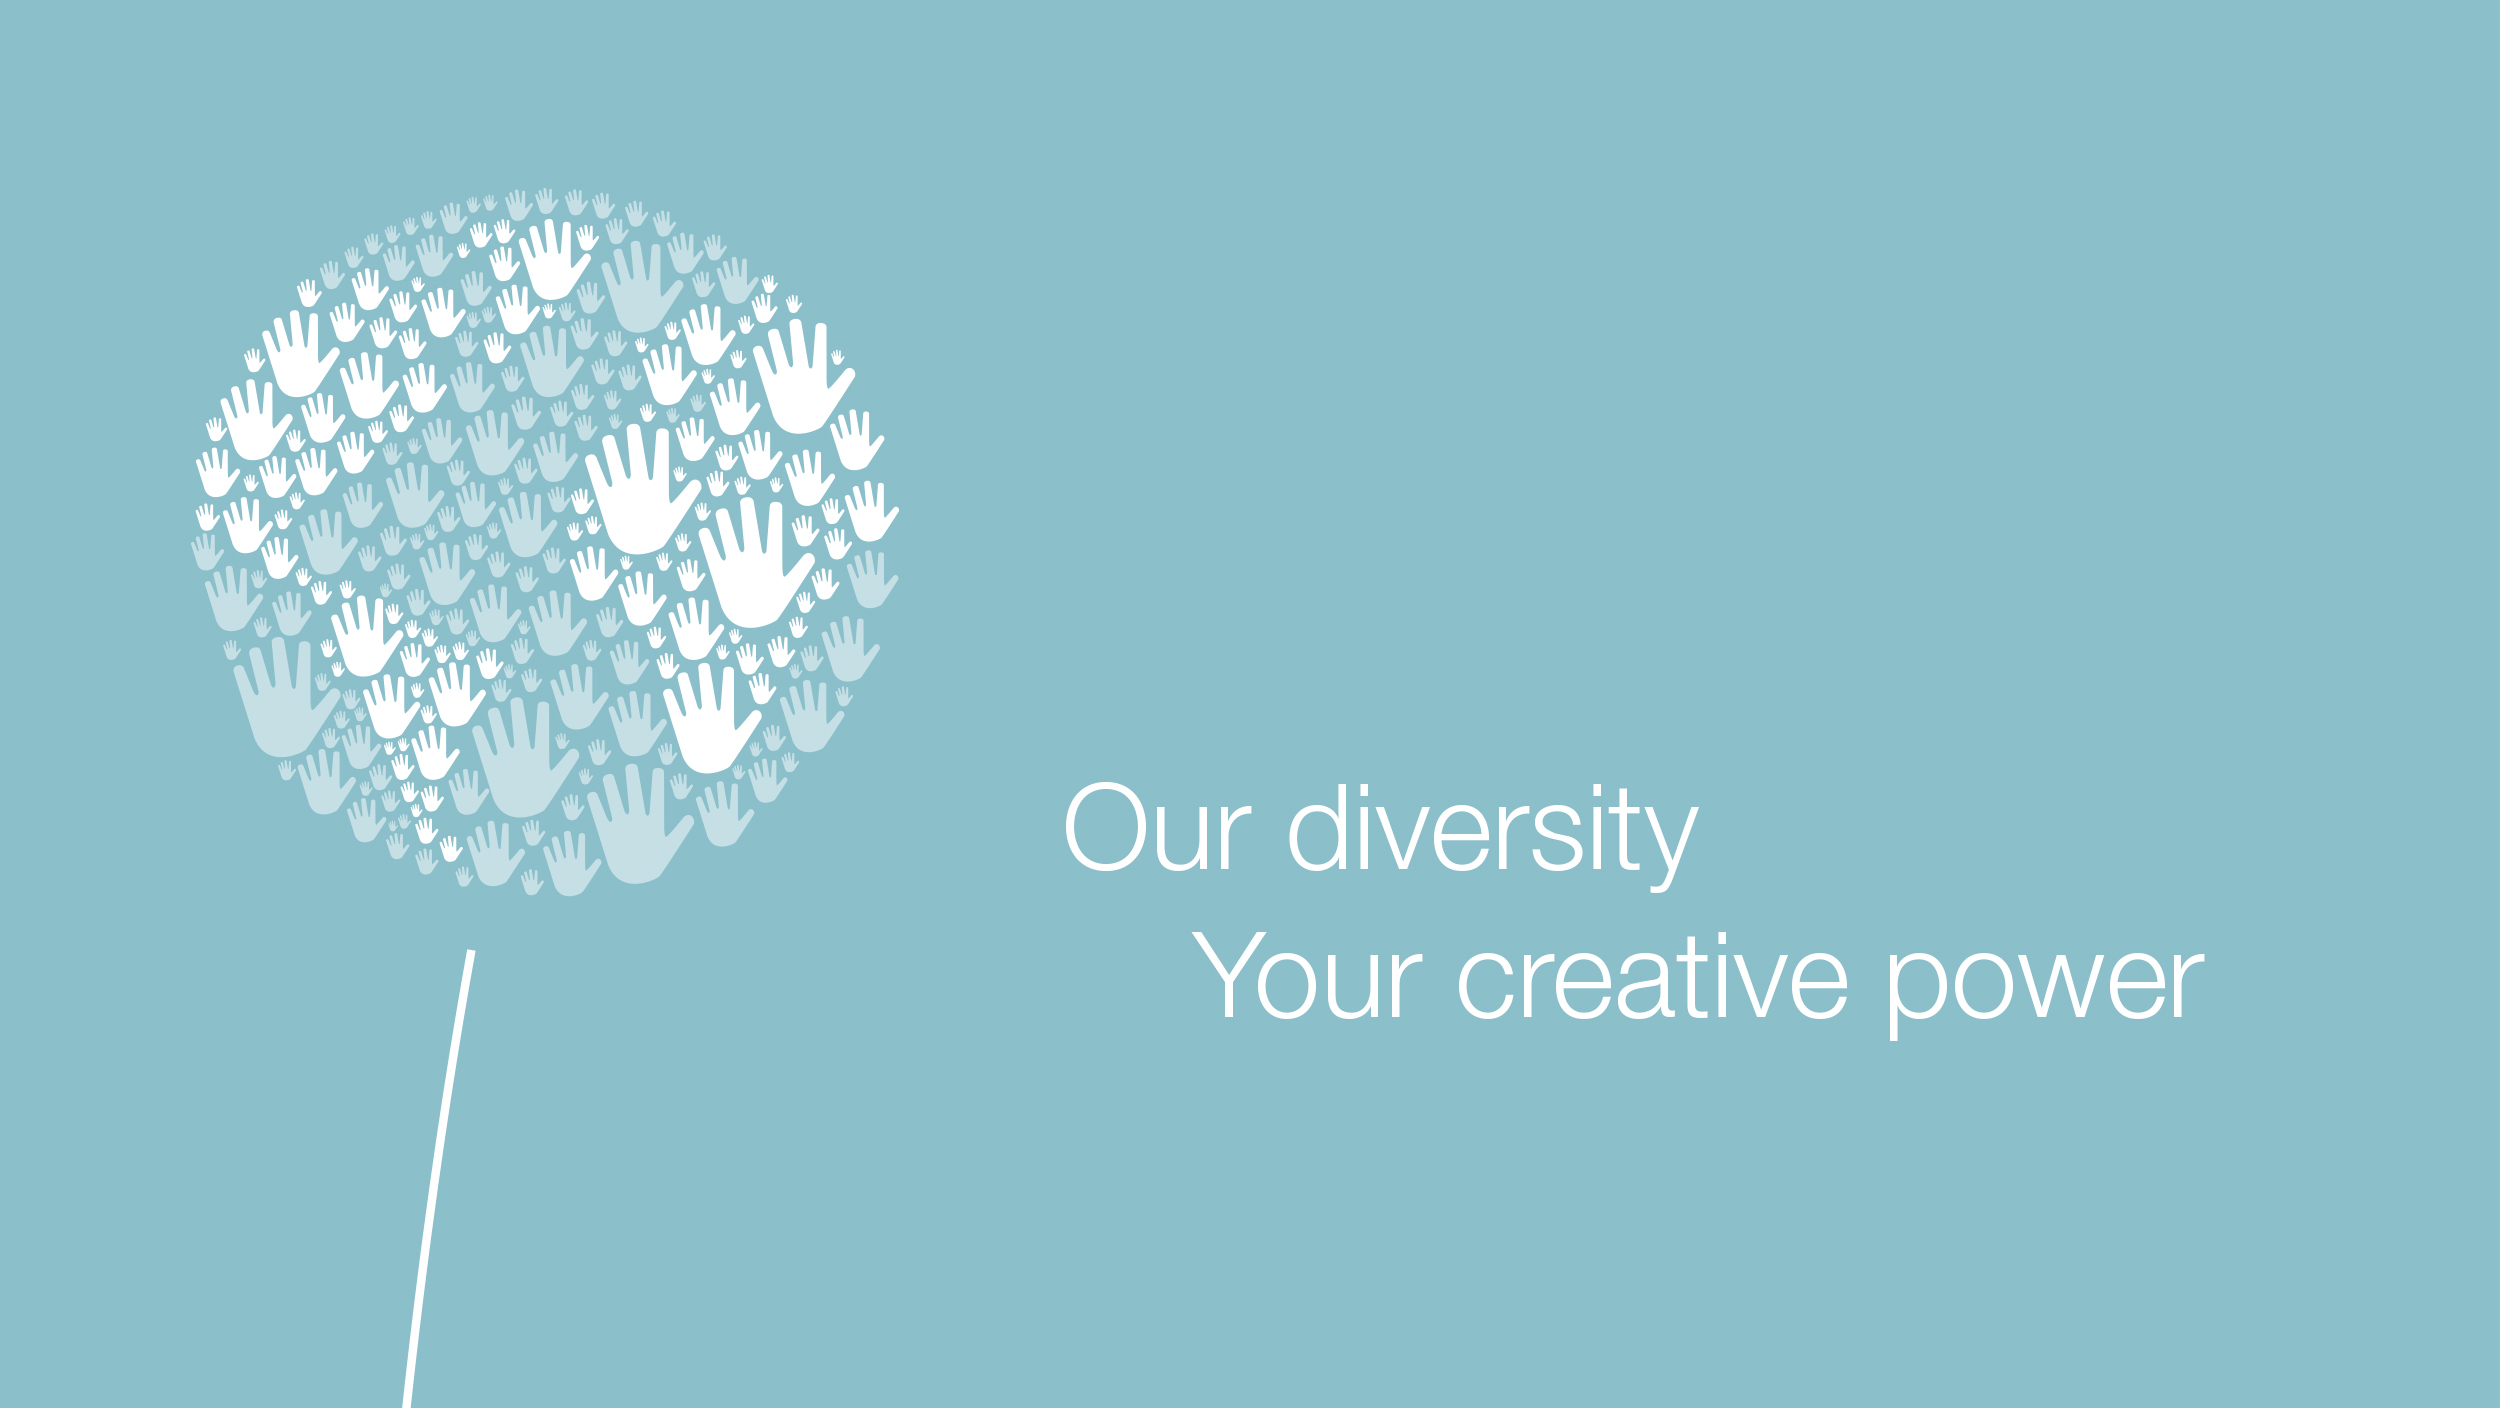 Come recita il detto, “Il mondo è nelle tue mani”: La nostra diversità Il tuo potere creativo